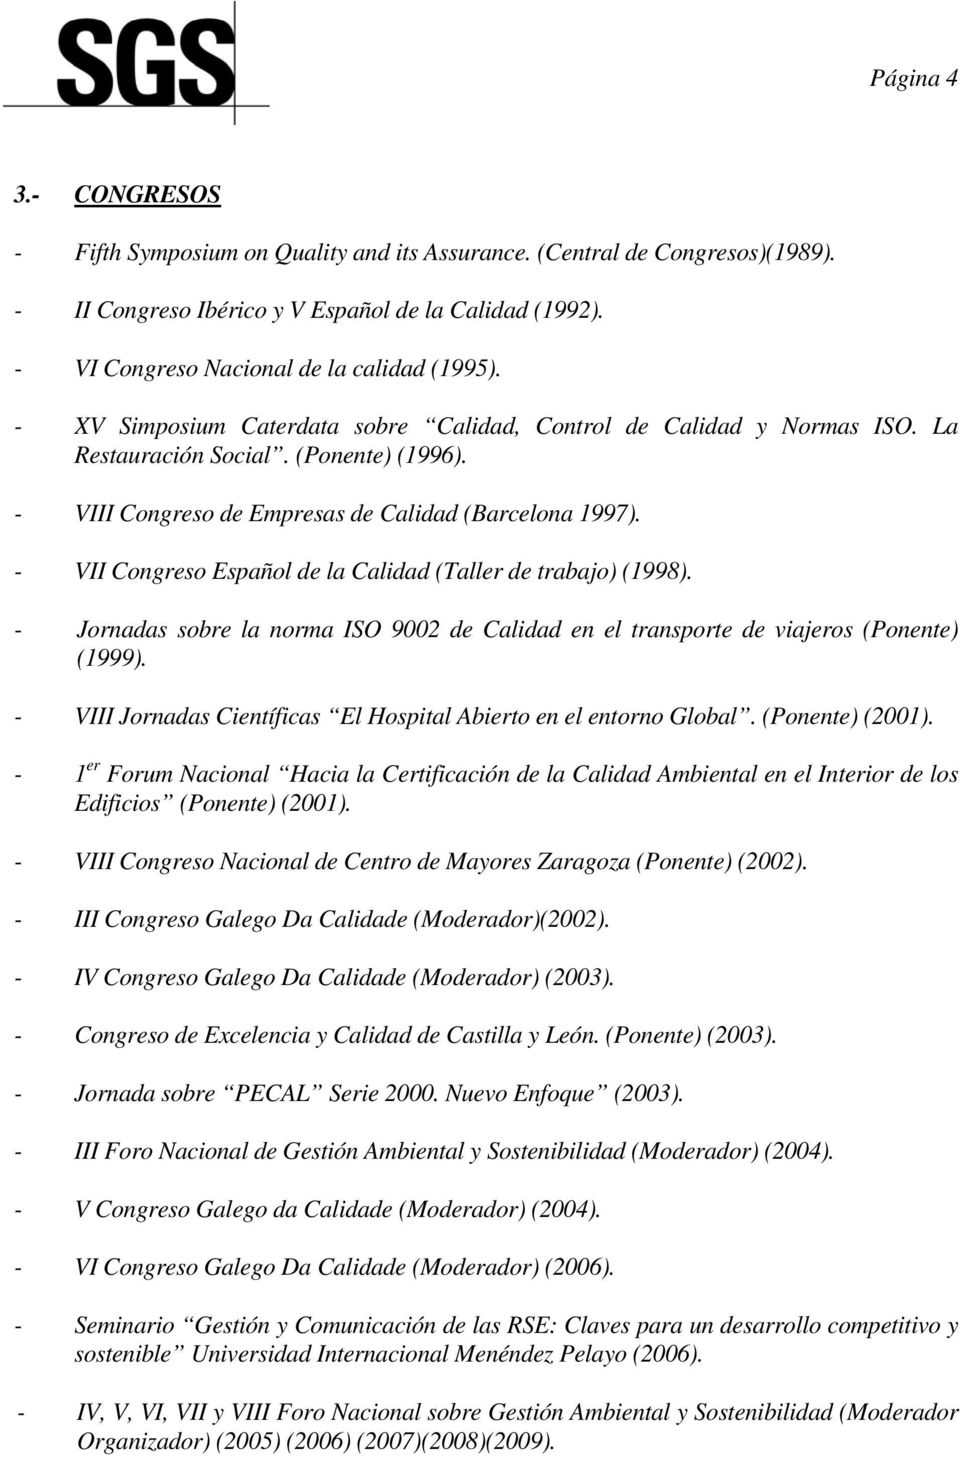 - VIII Congreso de Empresas de Calidad (Barcelona 1997). - VII Congreso Español de la Calidad (Taller de trabajo) (1998).